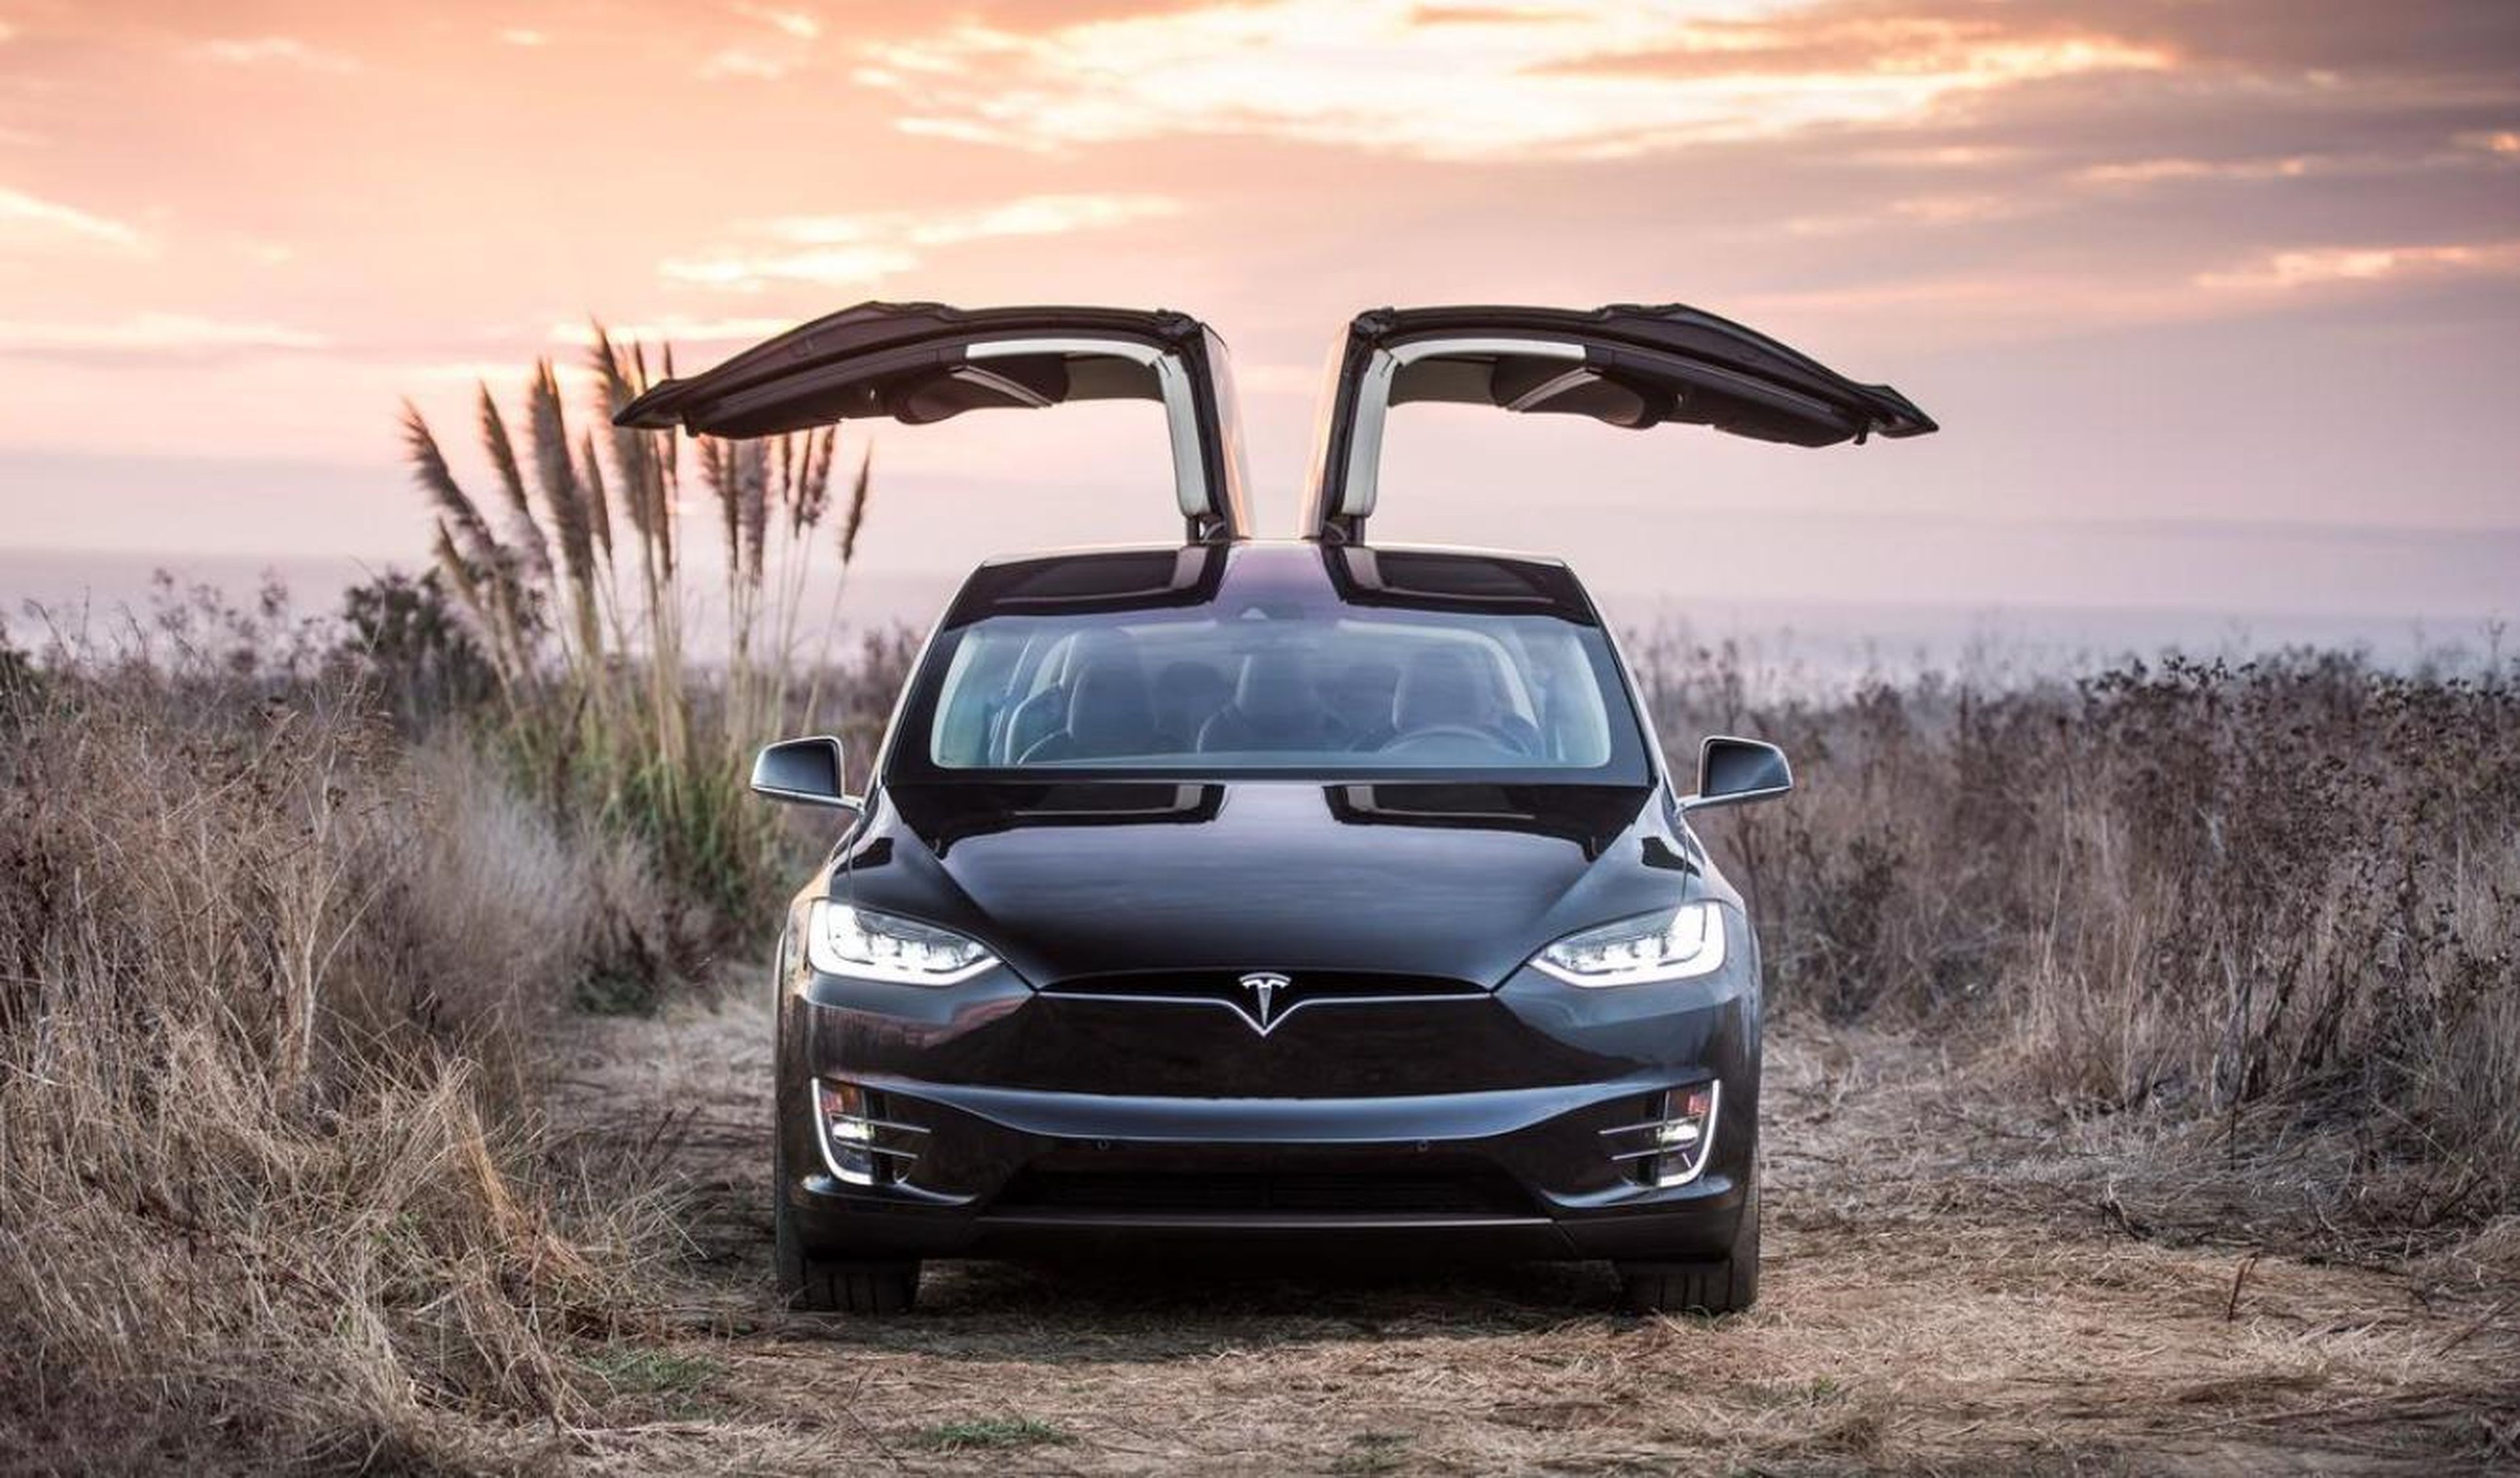 Ford compra un Tesla Model X. ¿Para qué?